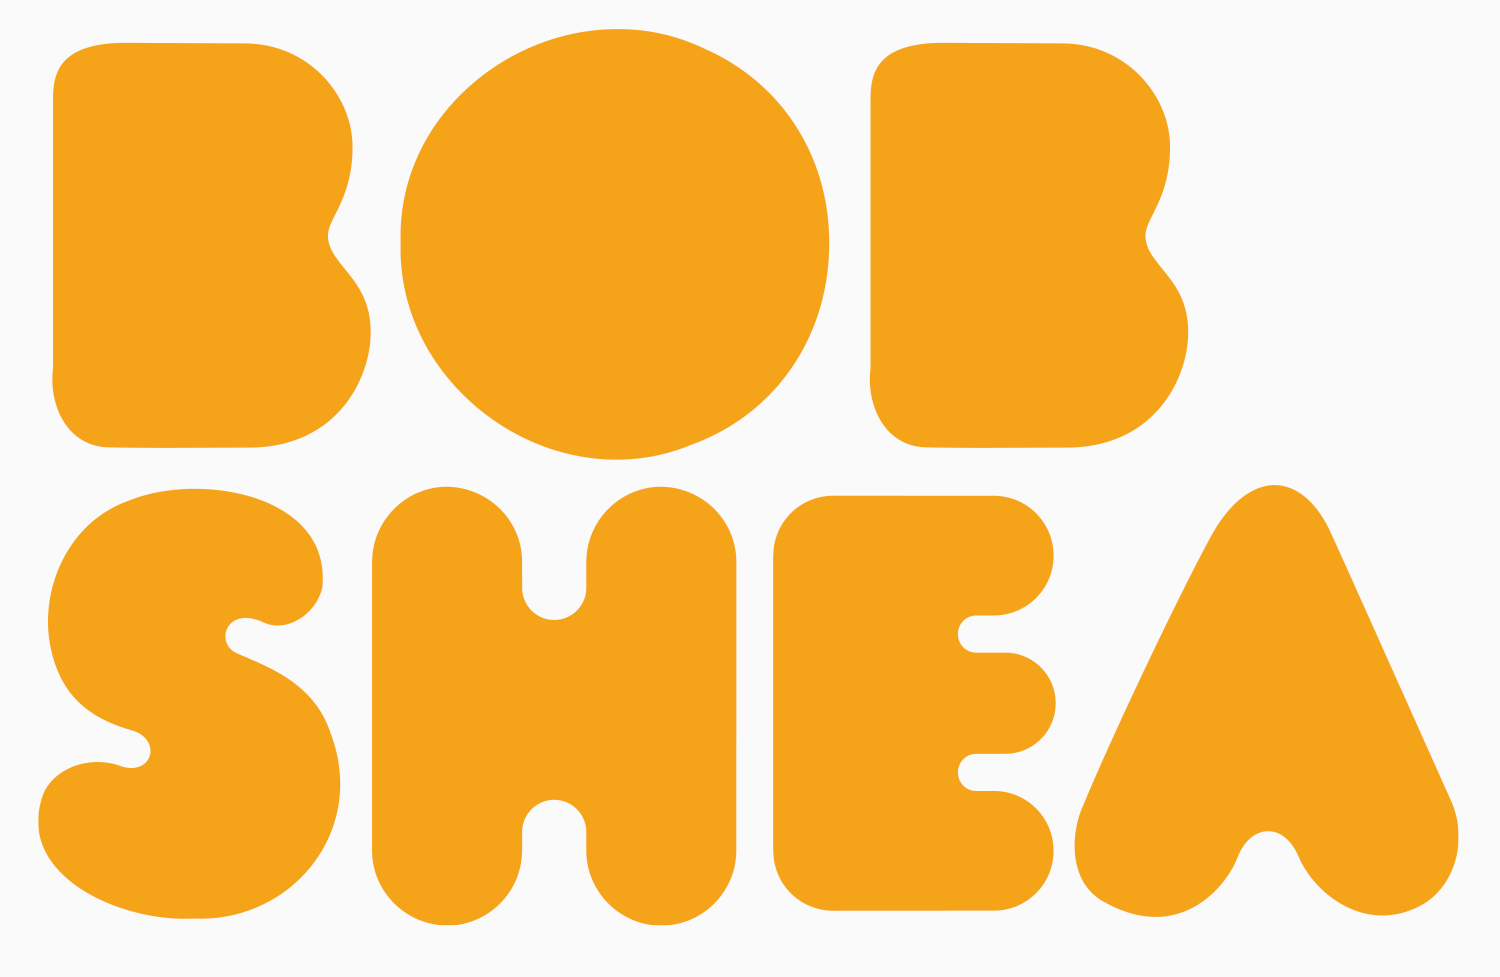 Bob Shea